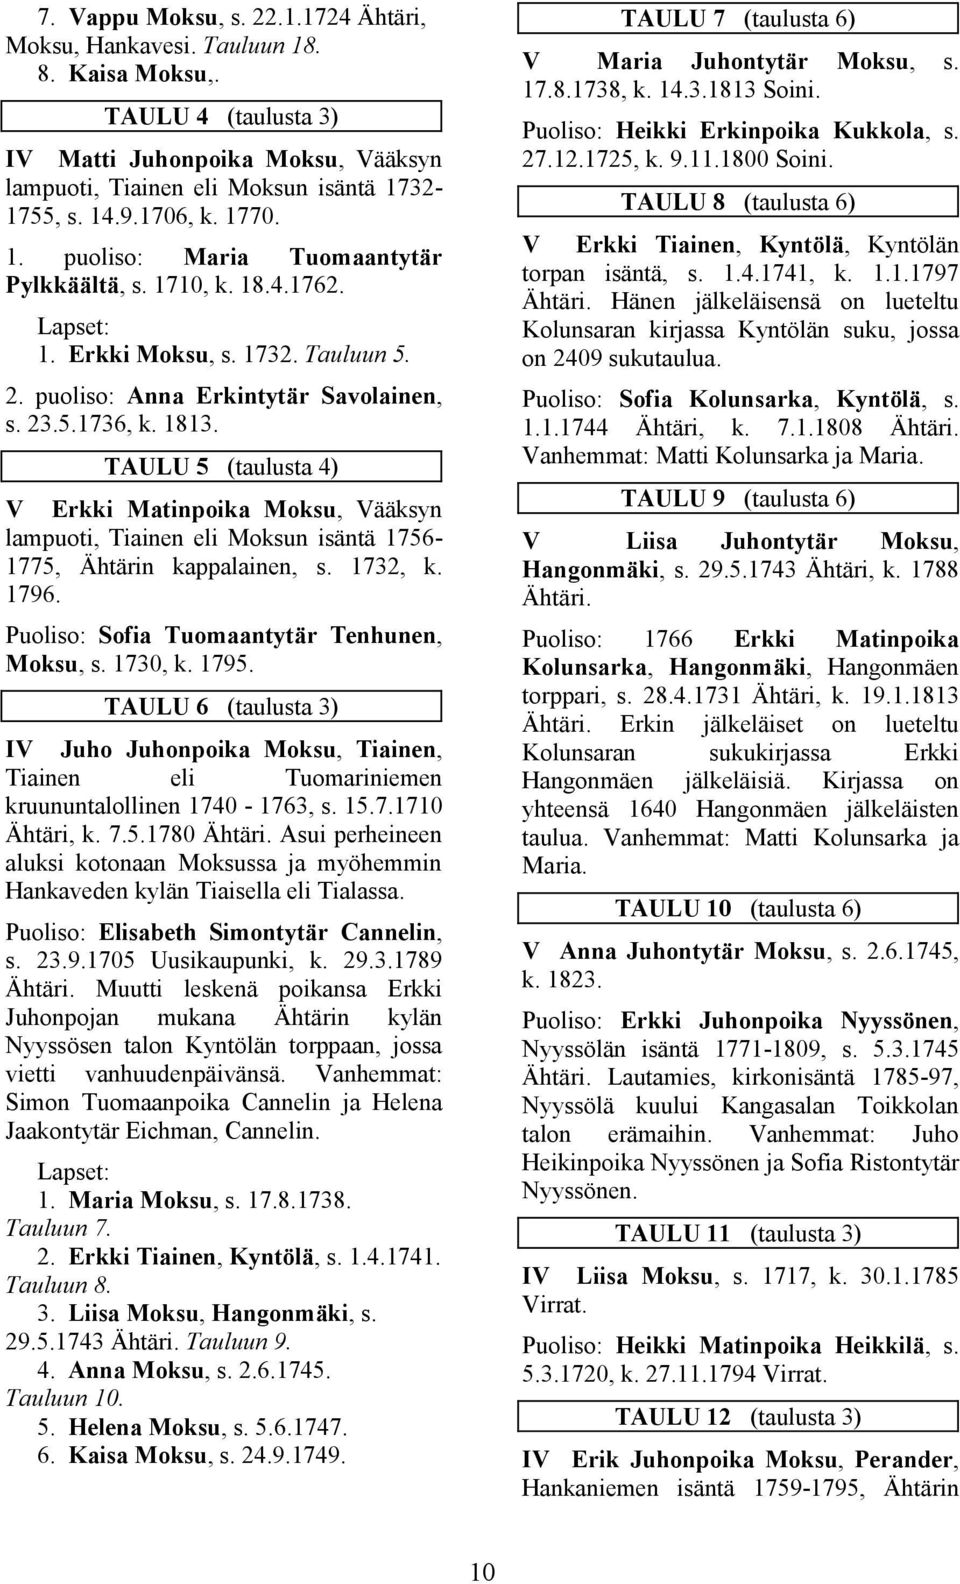 TAULU 5 (taulusta 4) V Erkki Matinpoika Moksu, Vääksyn lampuoti, Tiainen eli Moksun isäntä 1756-1775, Ähtärin kappalainen, s. 1732, k. 1796. Puoliso: Sofia Tuomaantytär Tenhunen, Moksu, s. 1730, k.